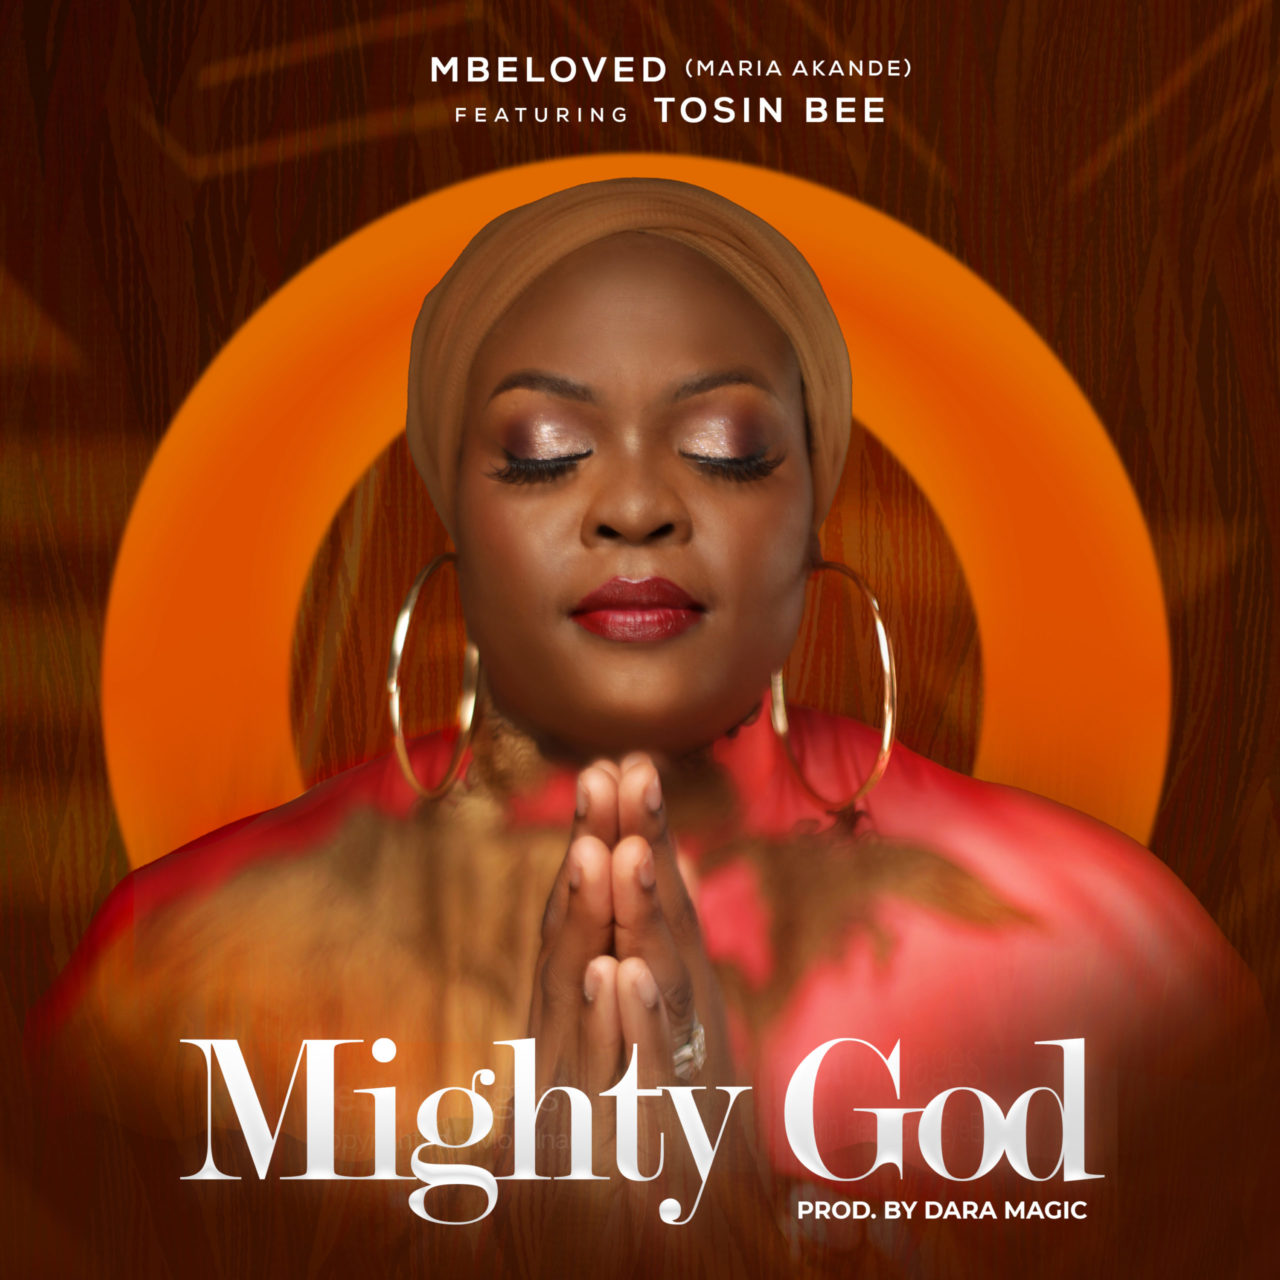 MIGHTY-GOD-MBELOVED